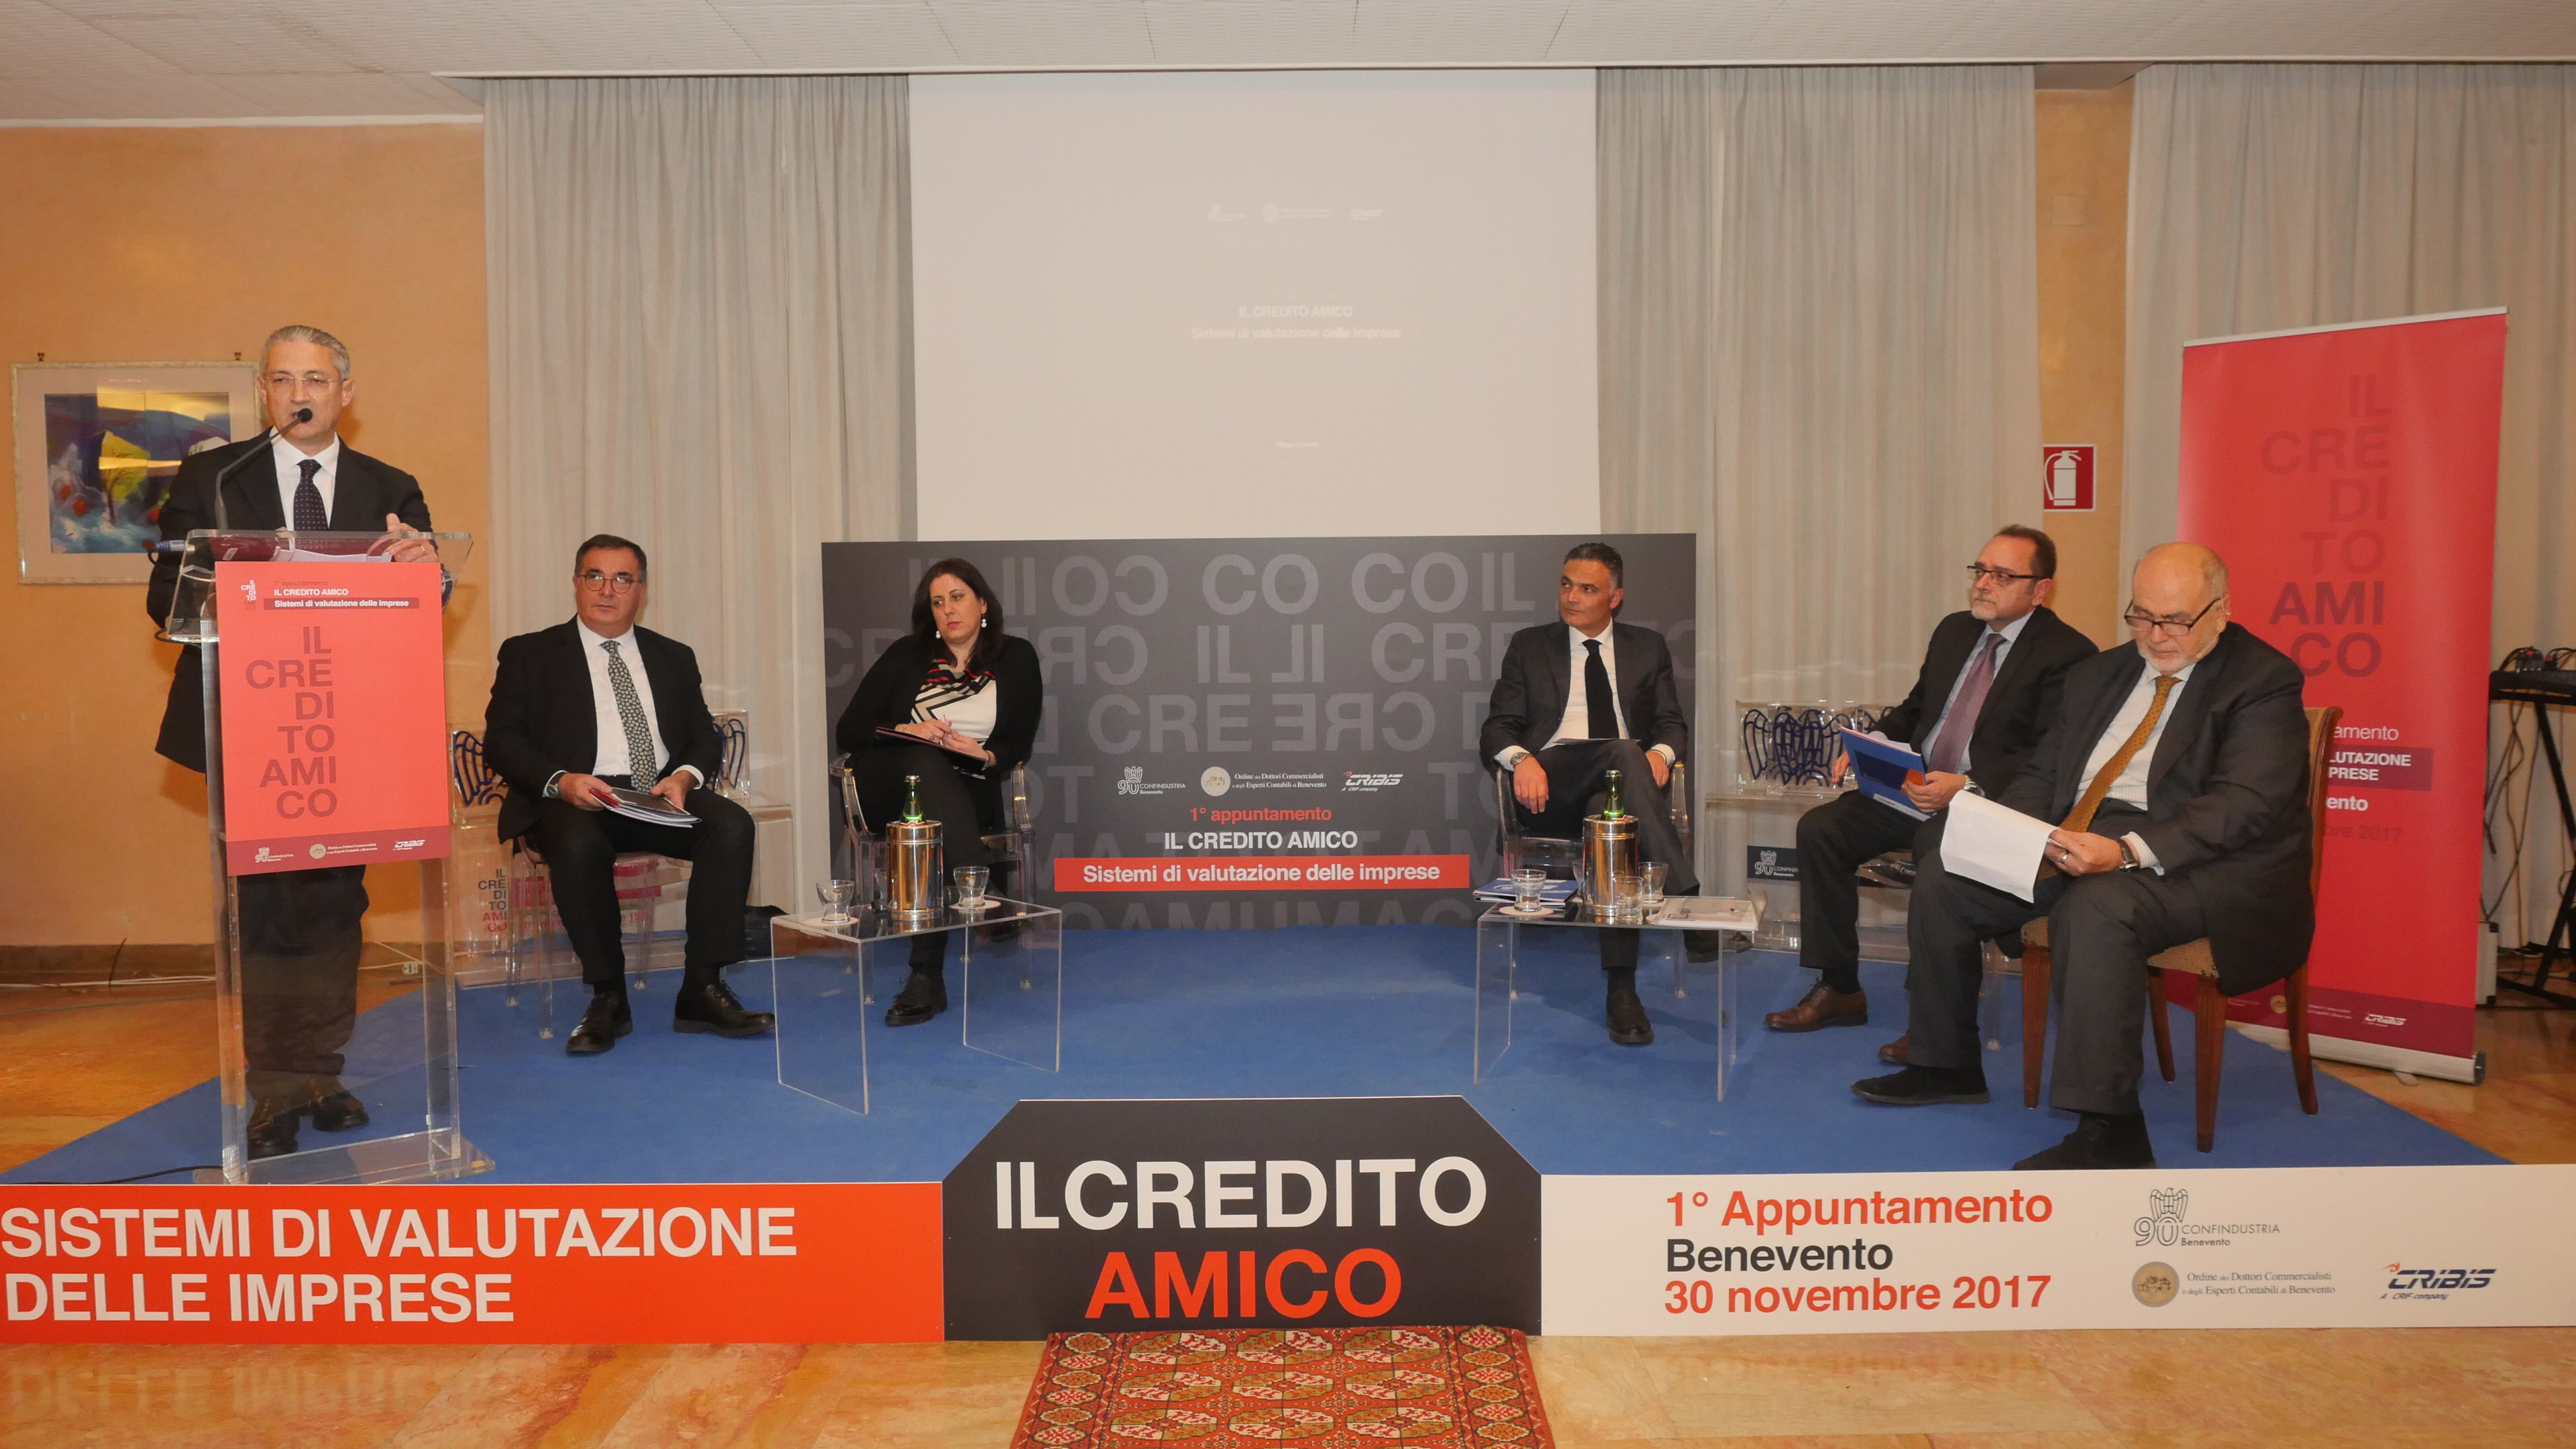 Benevento| “Il Credito Amico”, Confindustria presenta la prima tappa